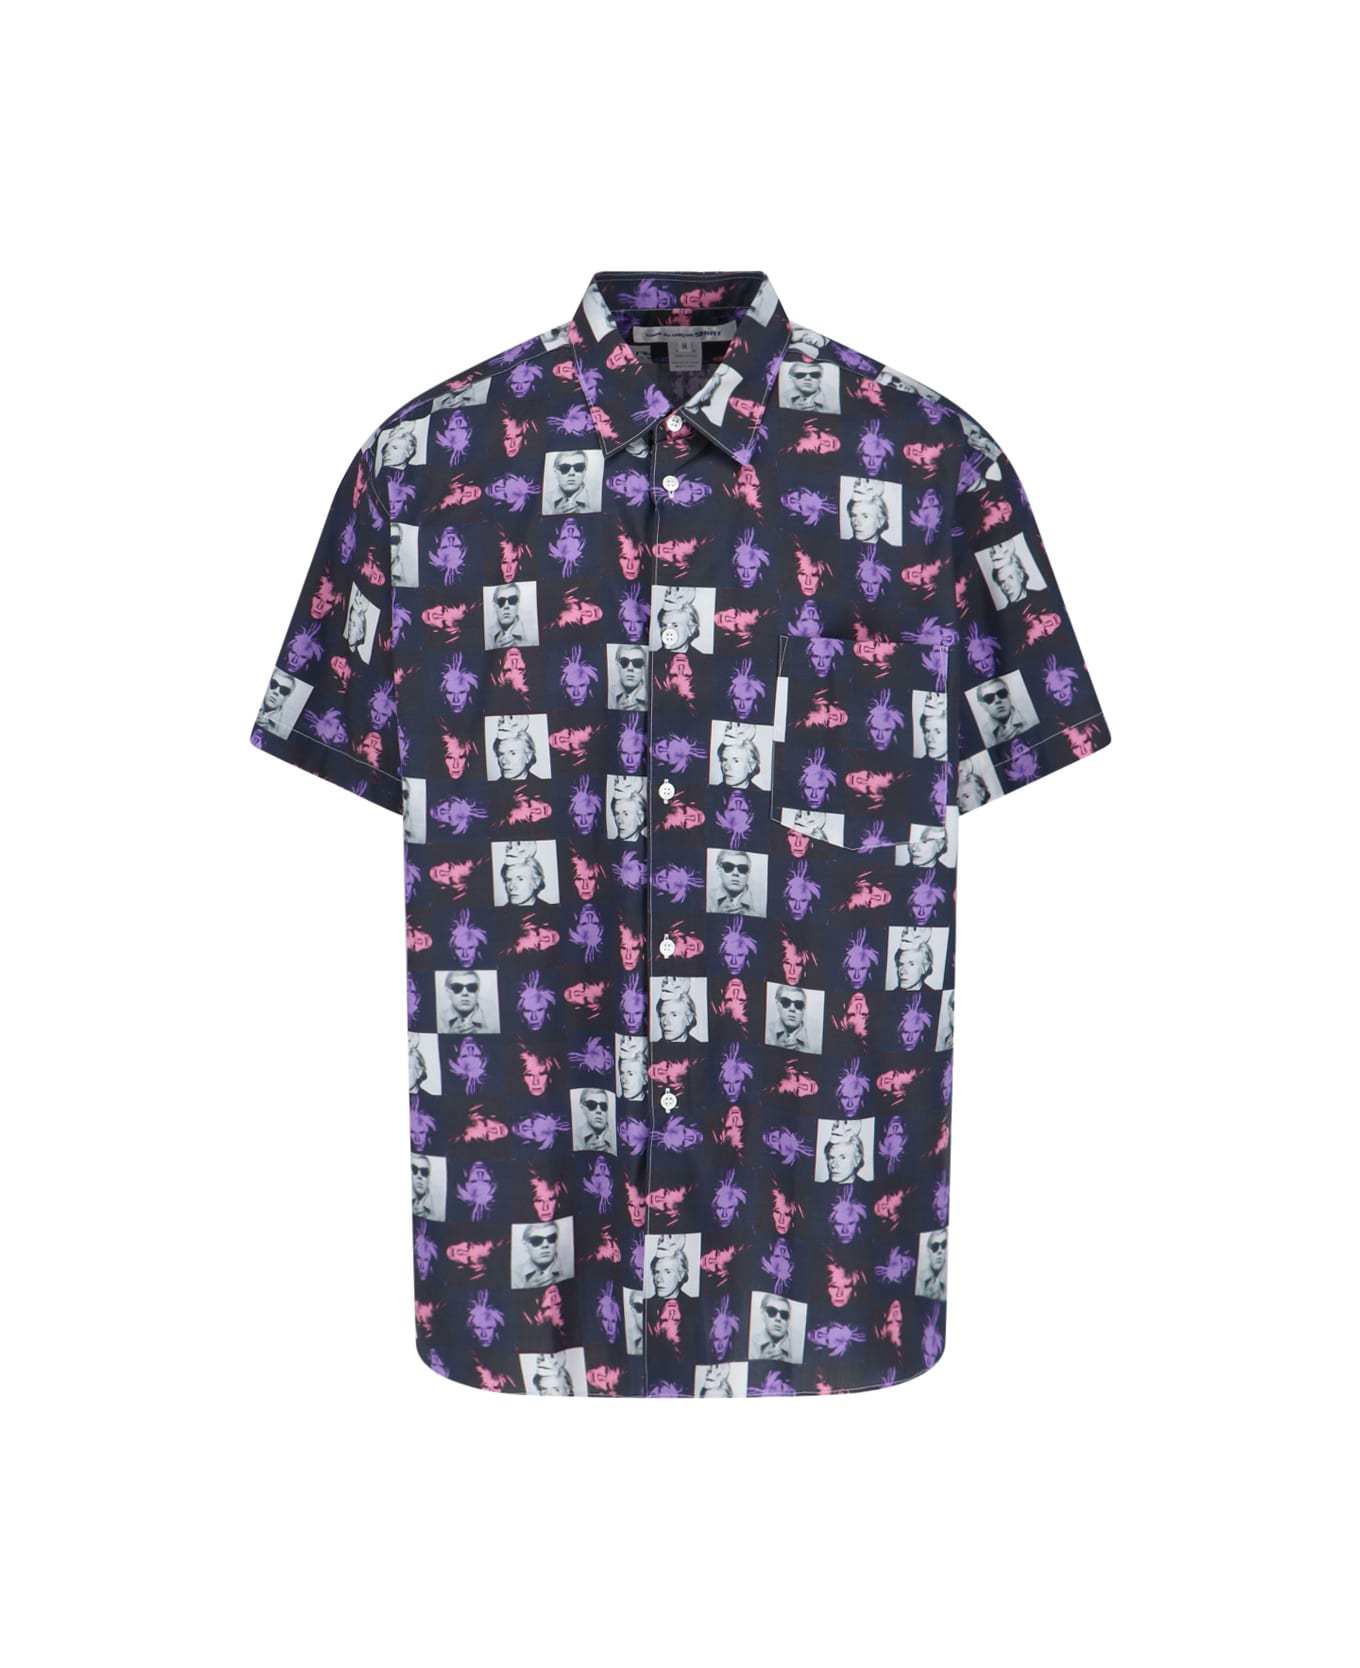 Comme des Garçons 'warhol' Shirt - Multicolor シャツ